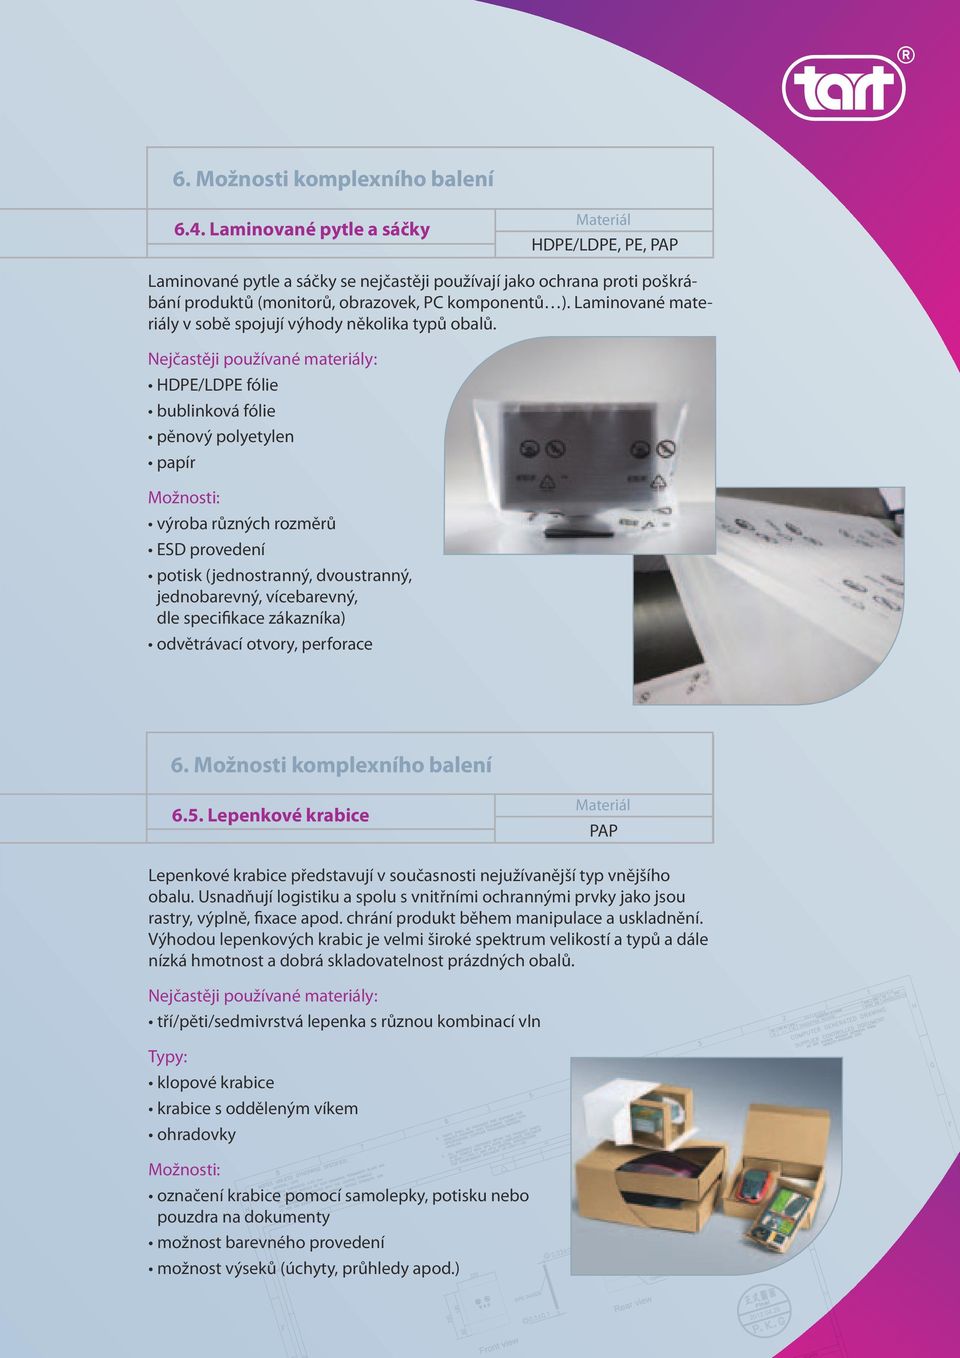 HDPE/LDPE fólie bublinková fólie pěnový polyetylen papír výroba různých rozměrů ESD provedení potisk (jednostranný, dvoustranný, jednobarevný, vícebarevný, dle specifikace zákazníka) odvětrávací